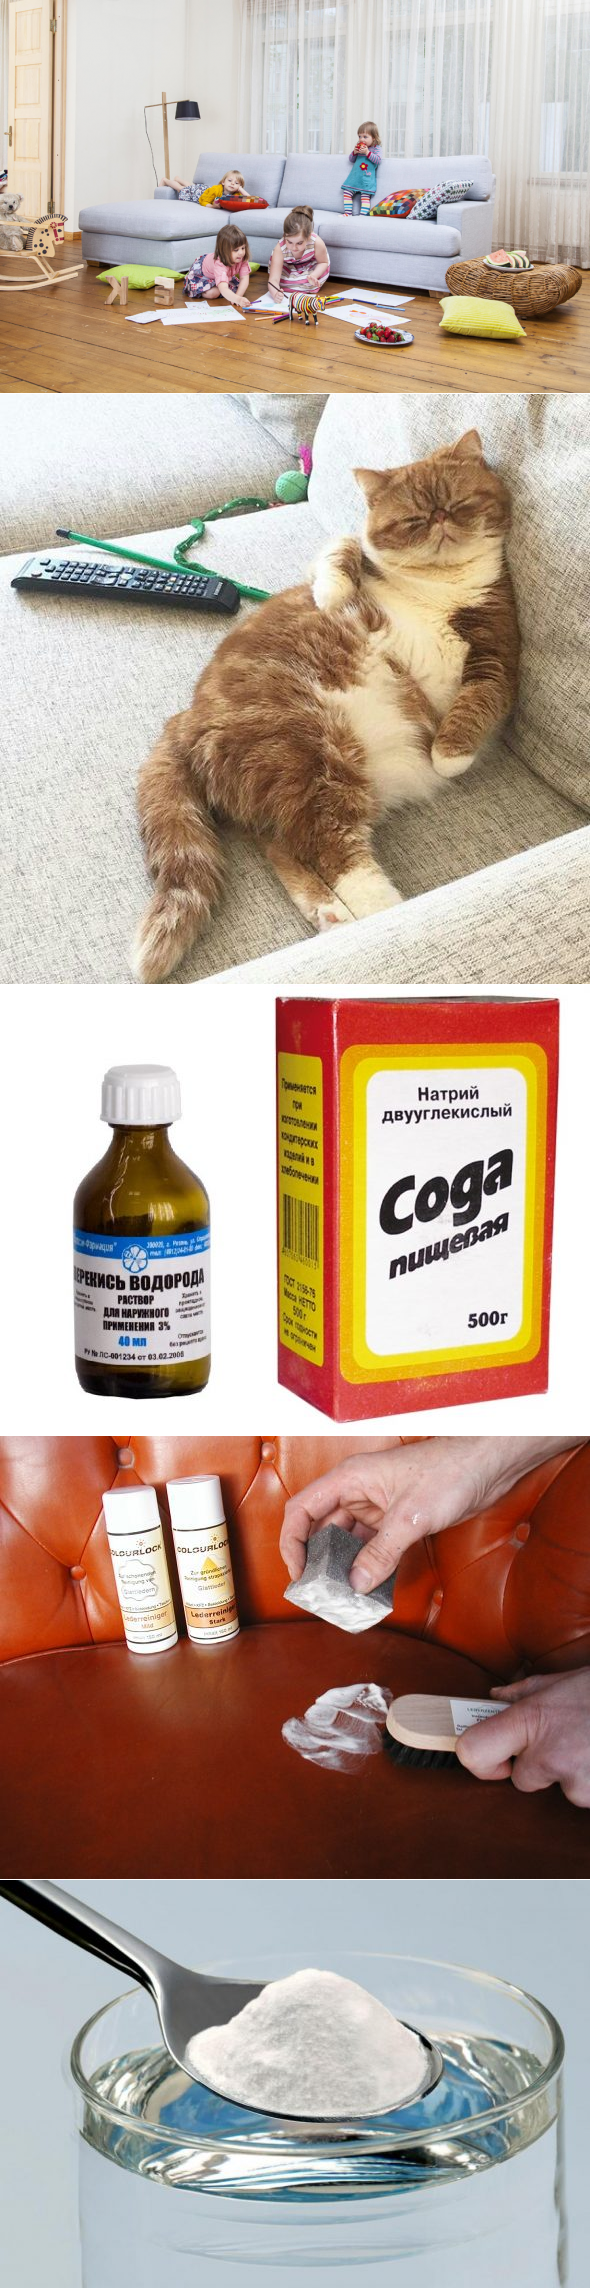 Как избавиться от кошачьего запаха в квартире – 15 лучших рецептов от запаха кошачьей мочи